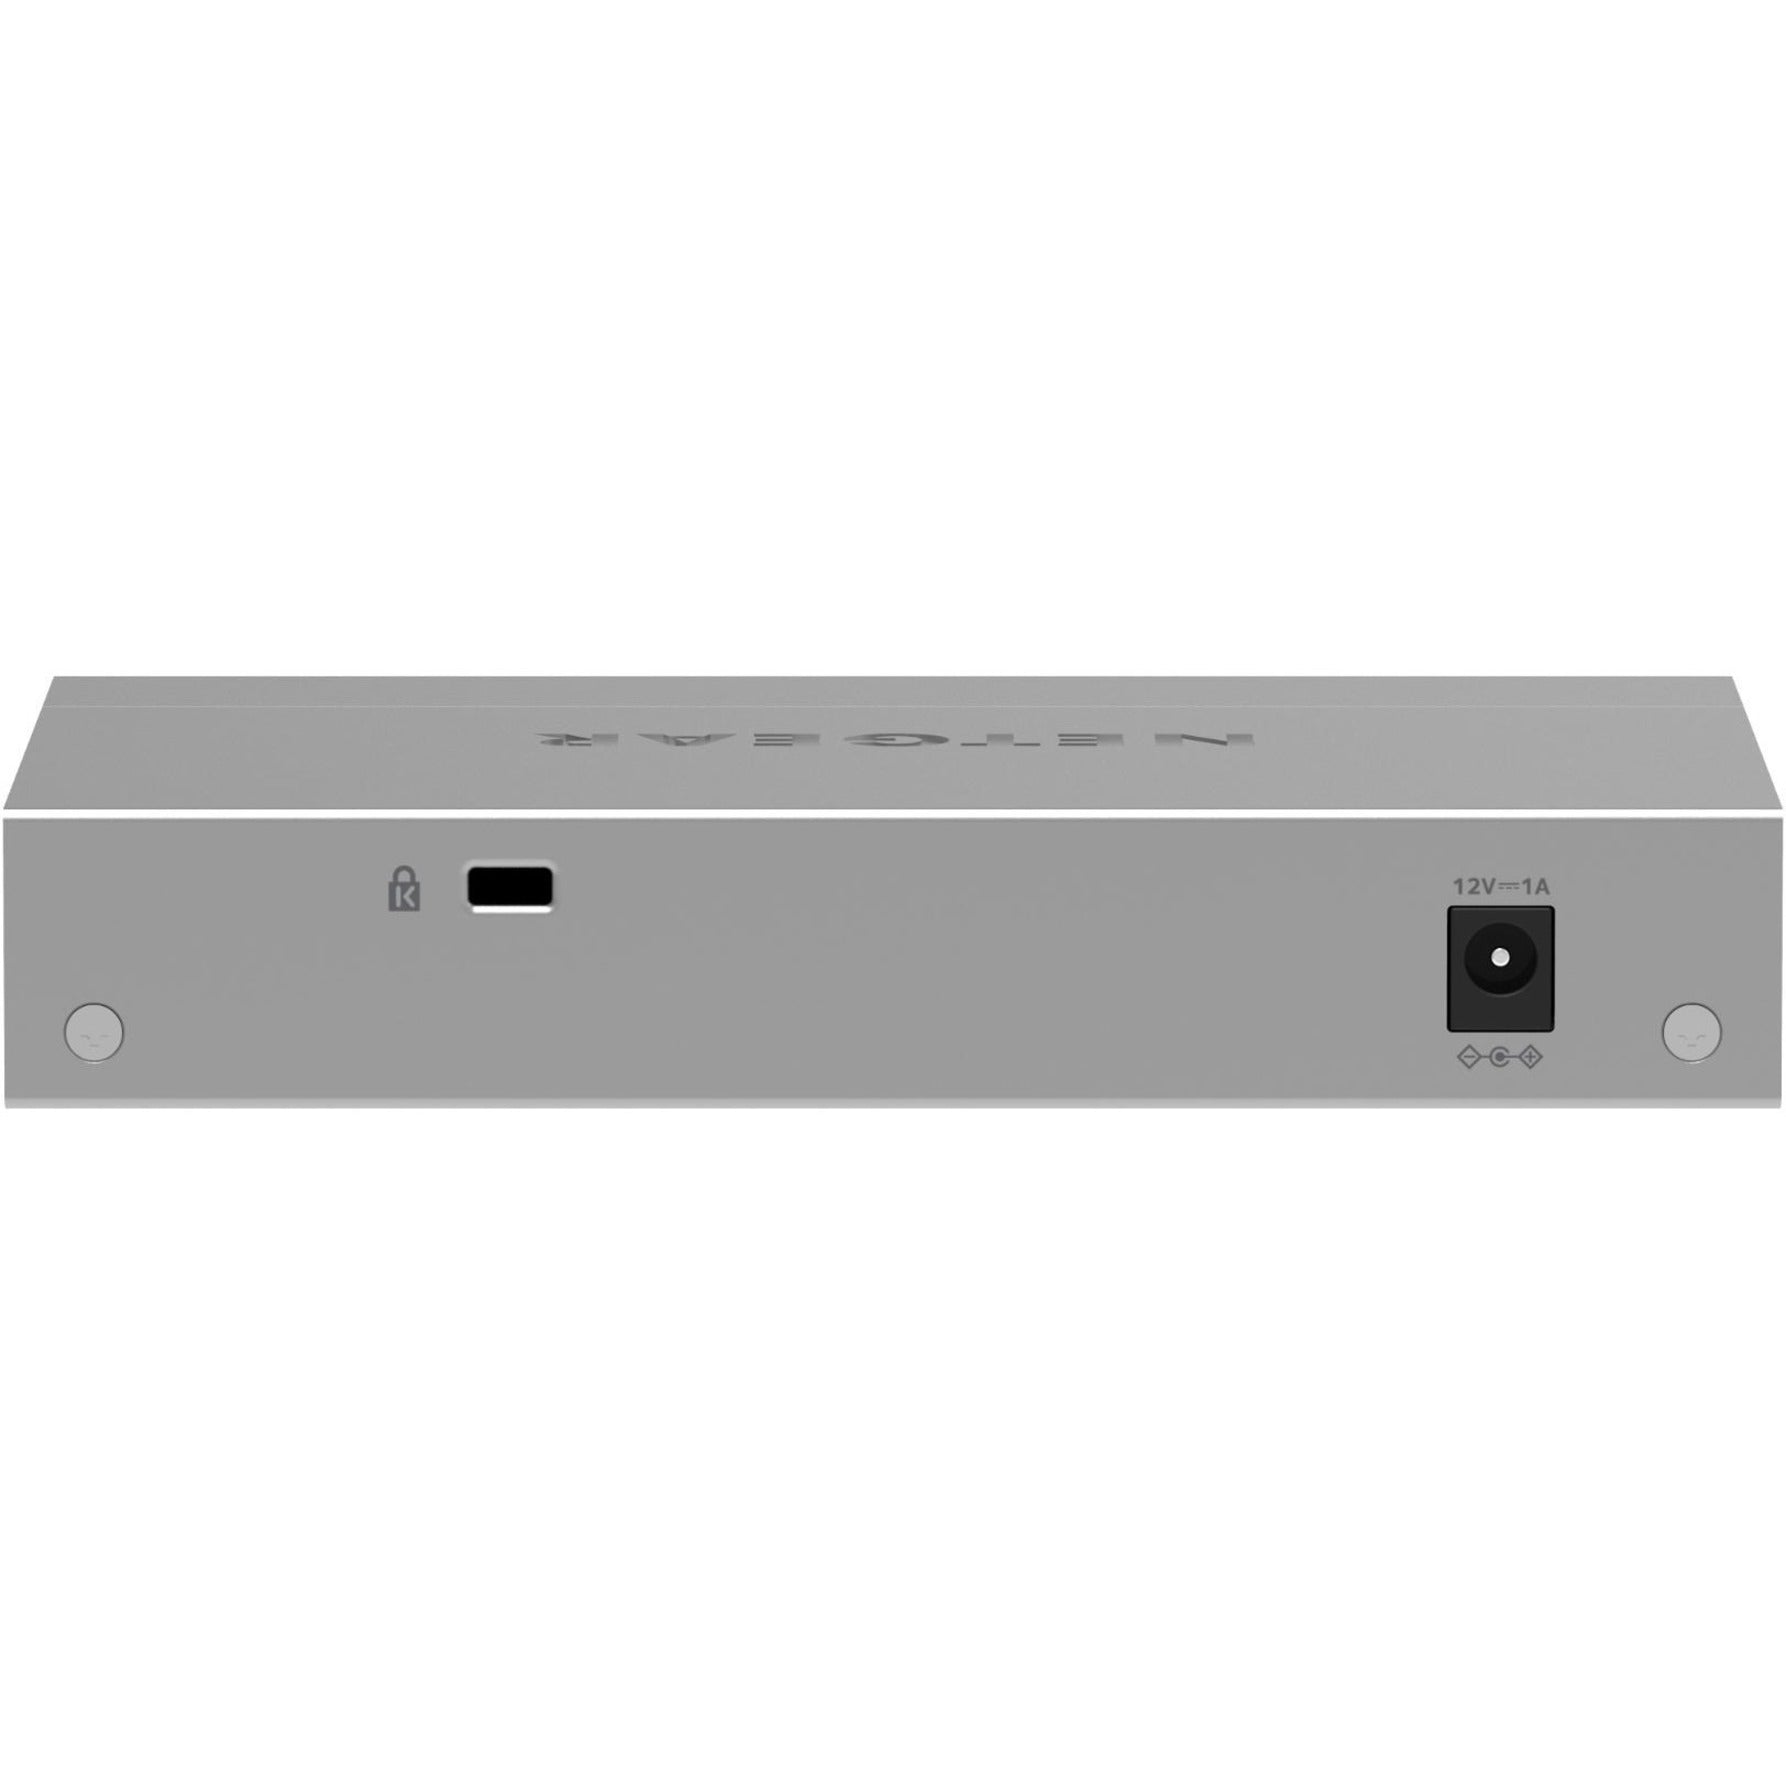 NETGEAR 5-Port Gigabit Ethernet Unmanaged Switch, White